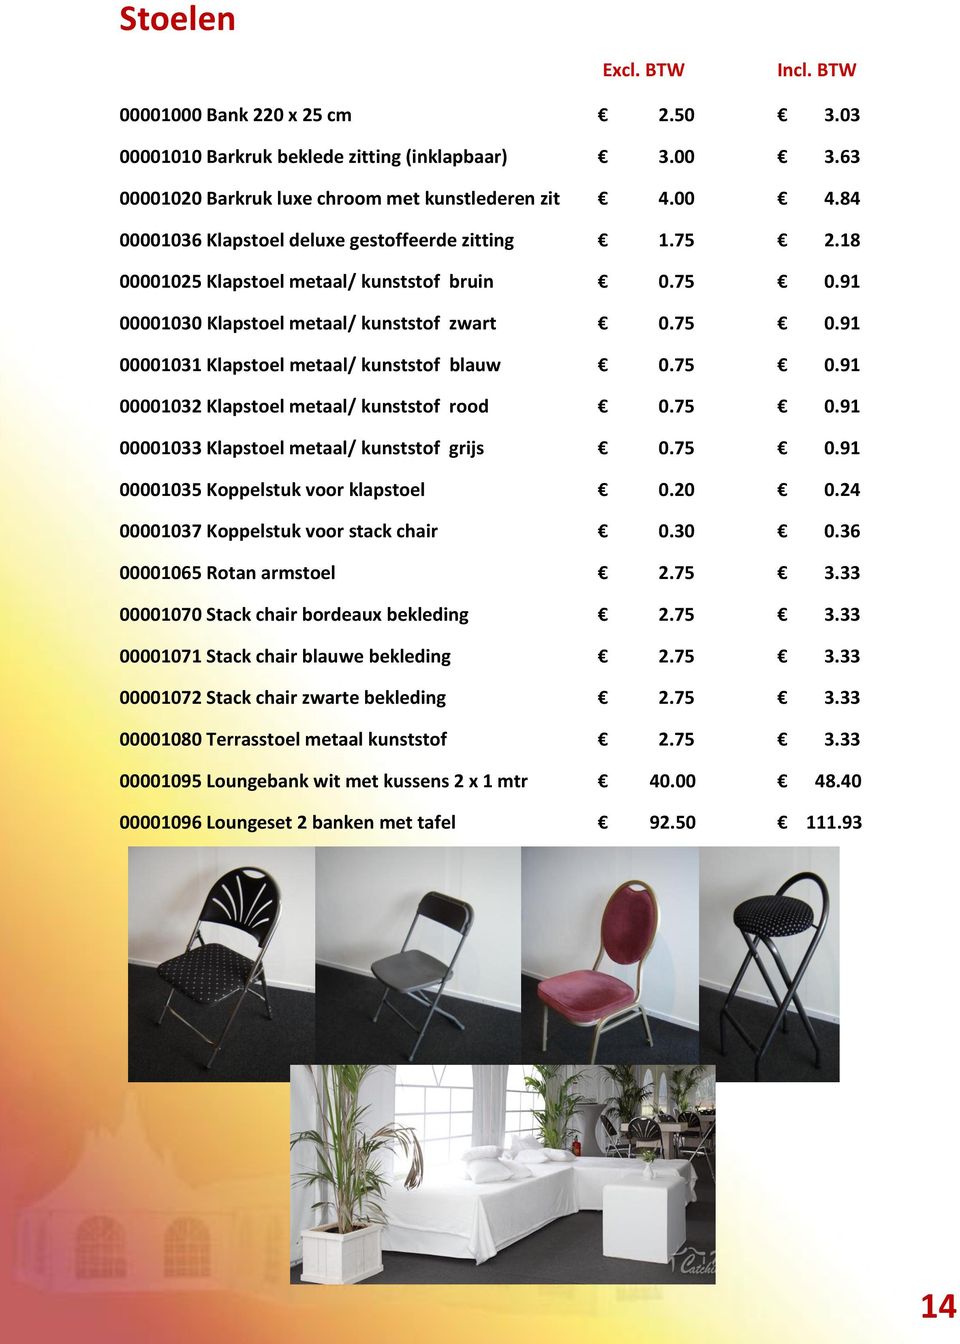 75 0.91 00001032 Klapstoel metaal/ kunststof rood 0.75 0.91 00001033 Klapstoel metaal/ kunststof grijs 0.75 0.91 00001035 Koppelstuk voor klapstoel 0.20 0.24 00001037 Koppelstuk voor stack chair 0.